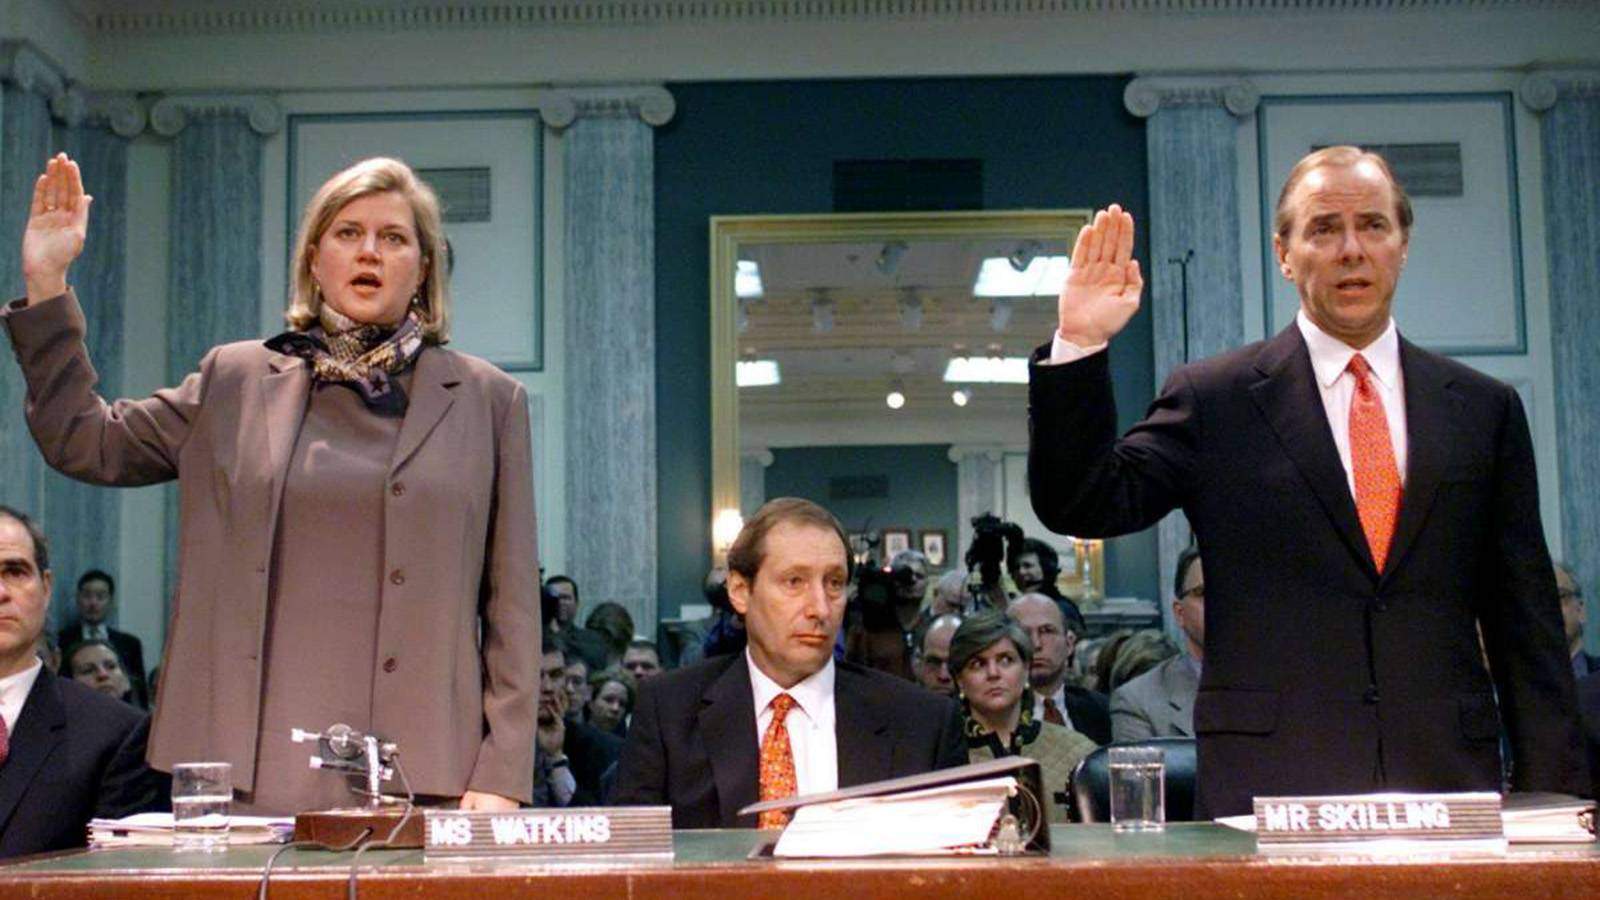 Sherron Watkins and Jeffrey Skilling testifying during Enron scandal in early 2000s